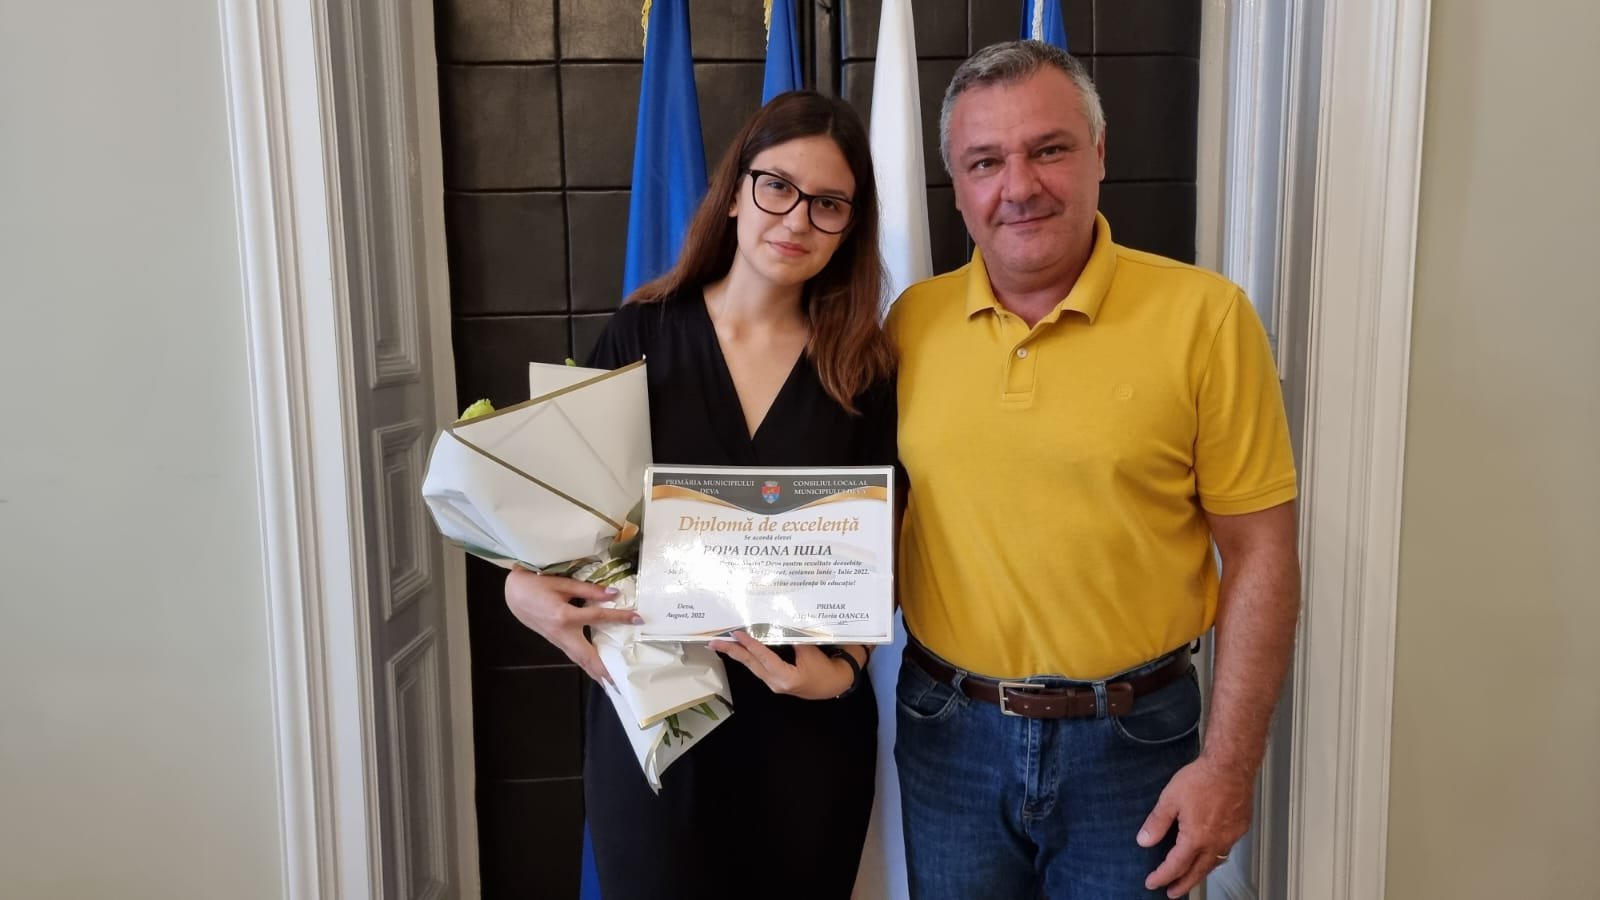 La Deva, excelența în educație este premiată. Ioana Iulia Popa a obținut media 10 la Bacalaureat și a primit 5.000 de lei din partea administrației locale